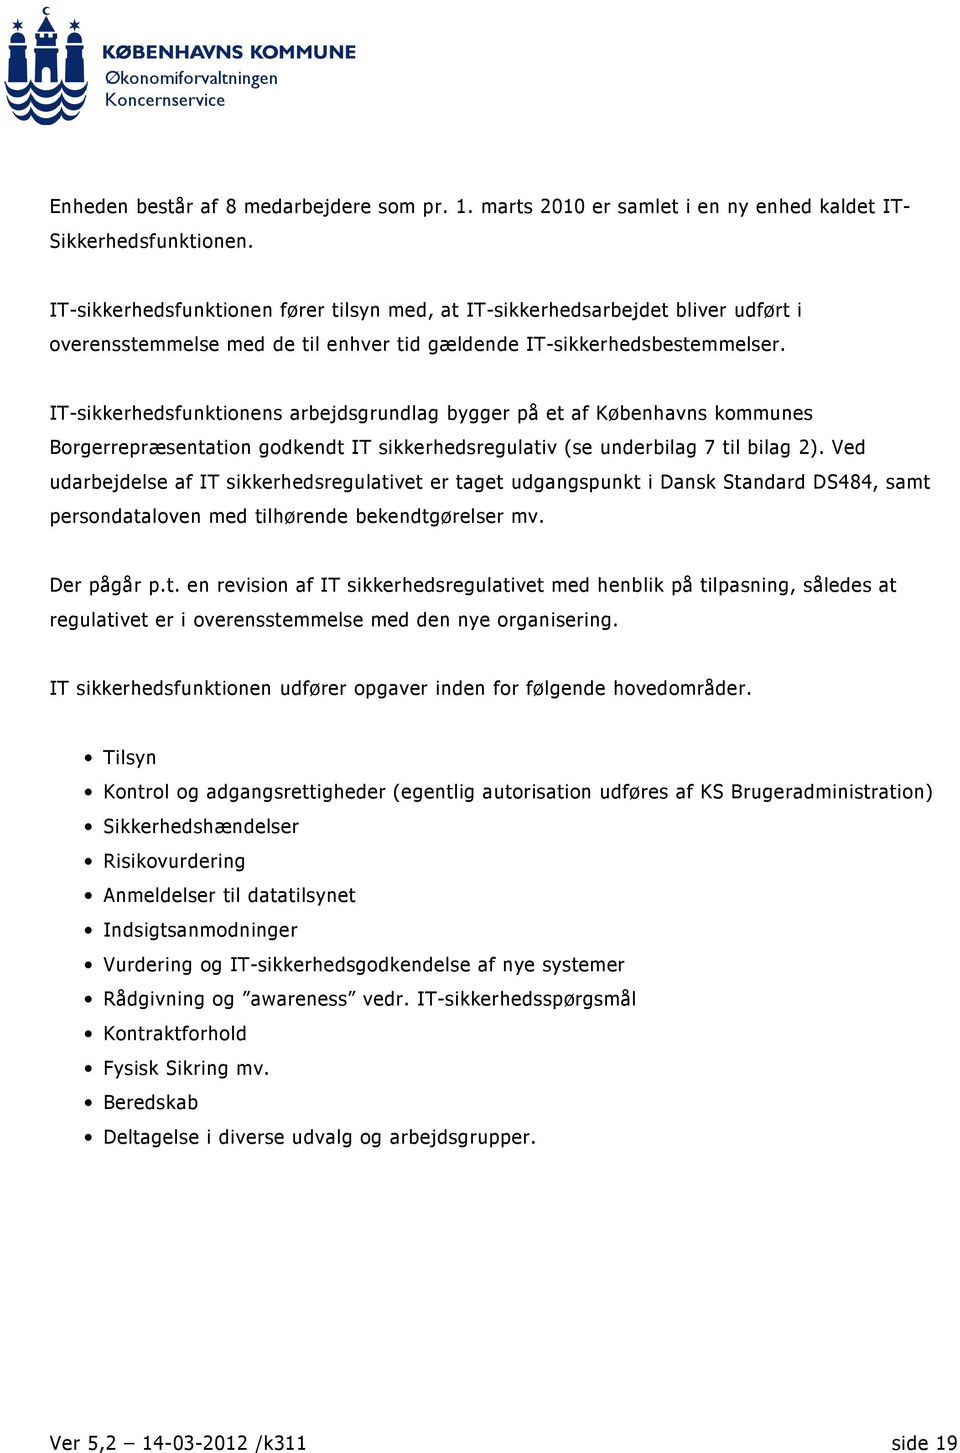 IT-sikkerhedsfunktionens arbejdsgrundlag bygger på et af Københavns kommunes Borgerrepræsentation godkendt IT sikkerhedsregulativ (se underbilag 7 til bilag 2).